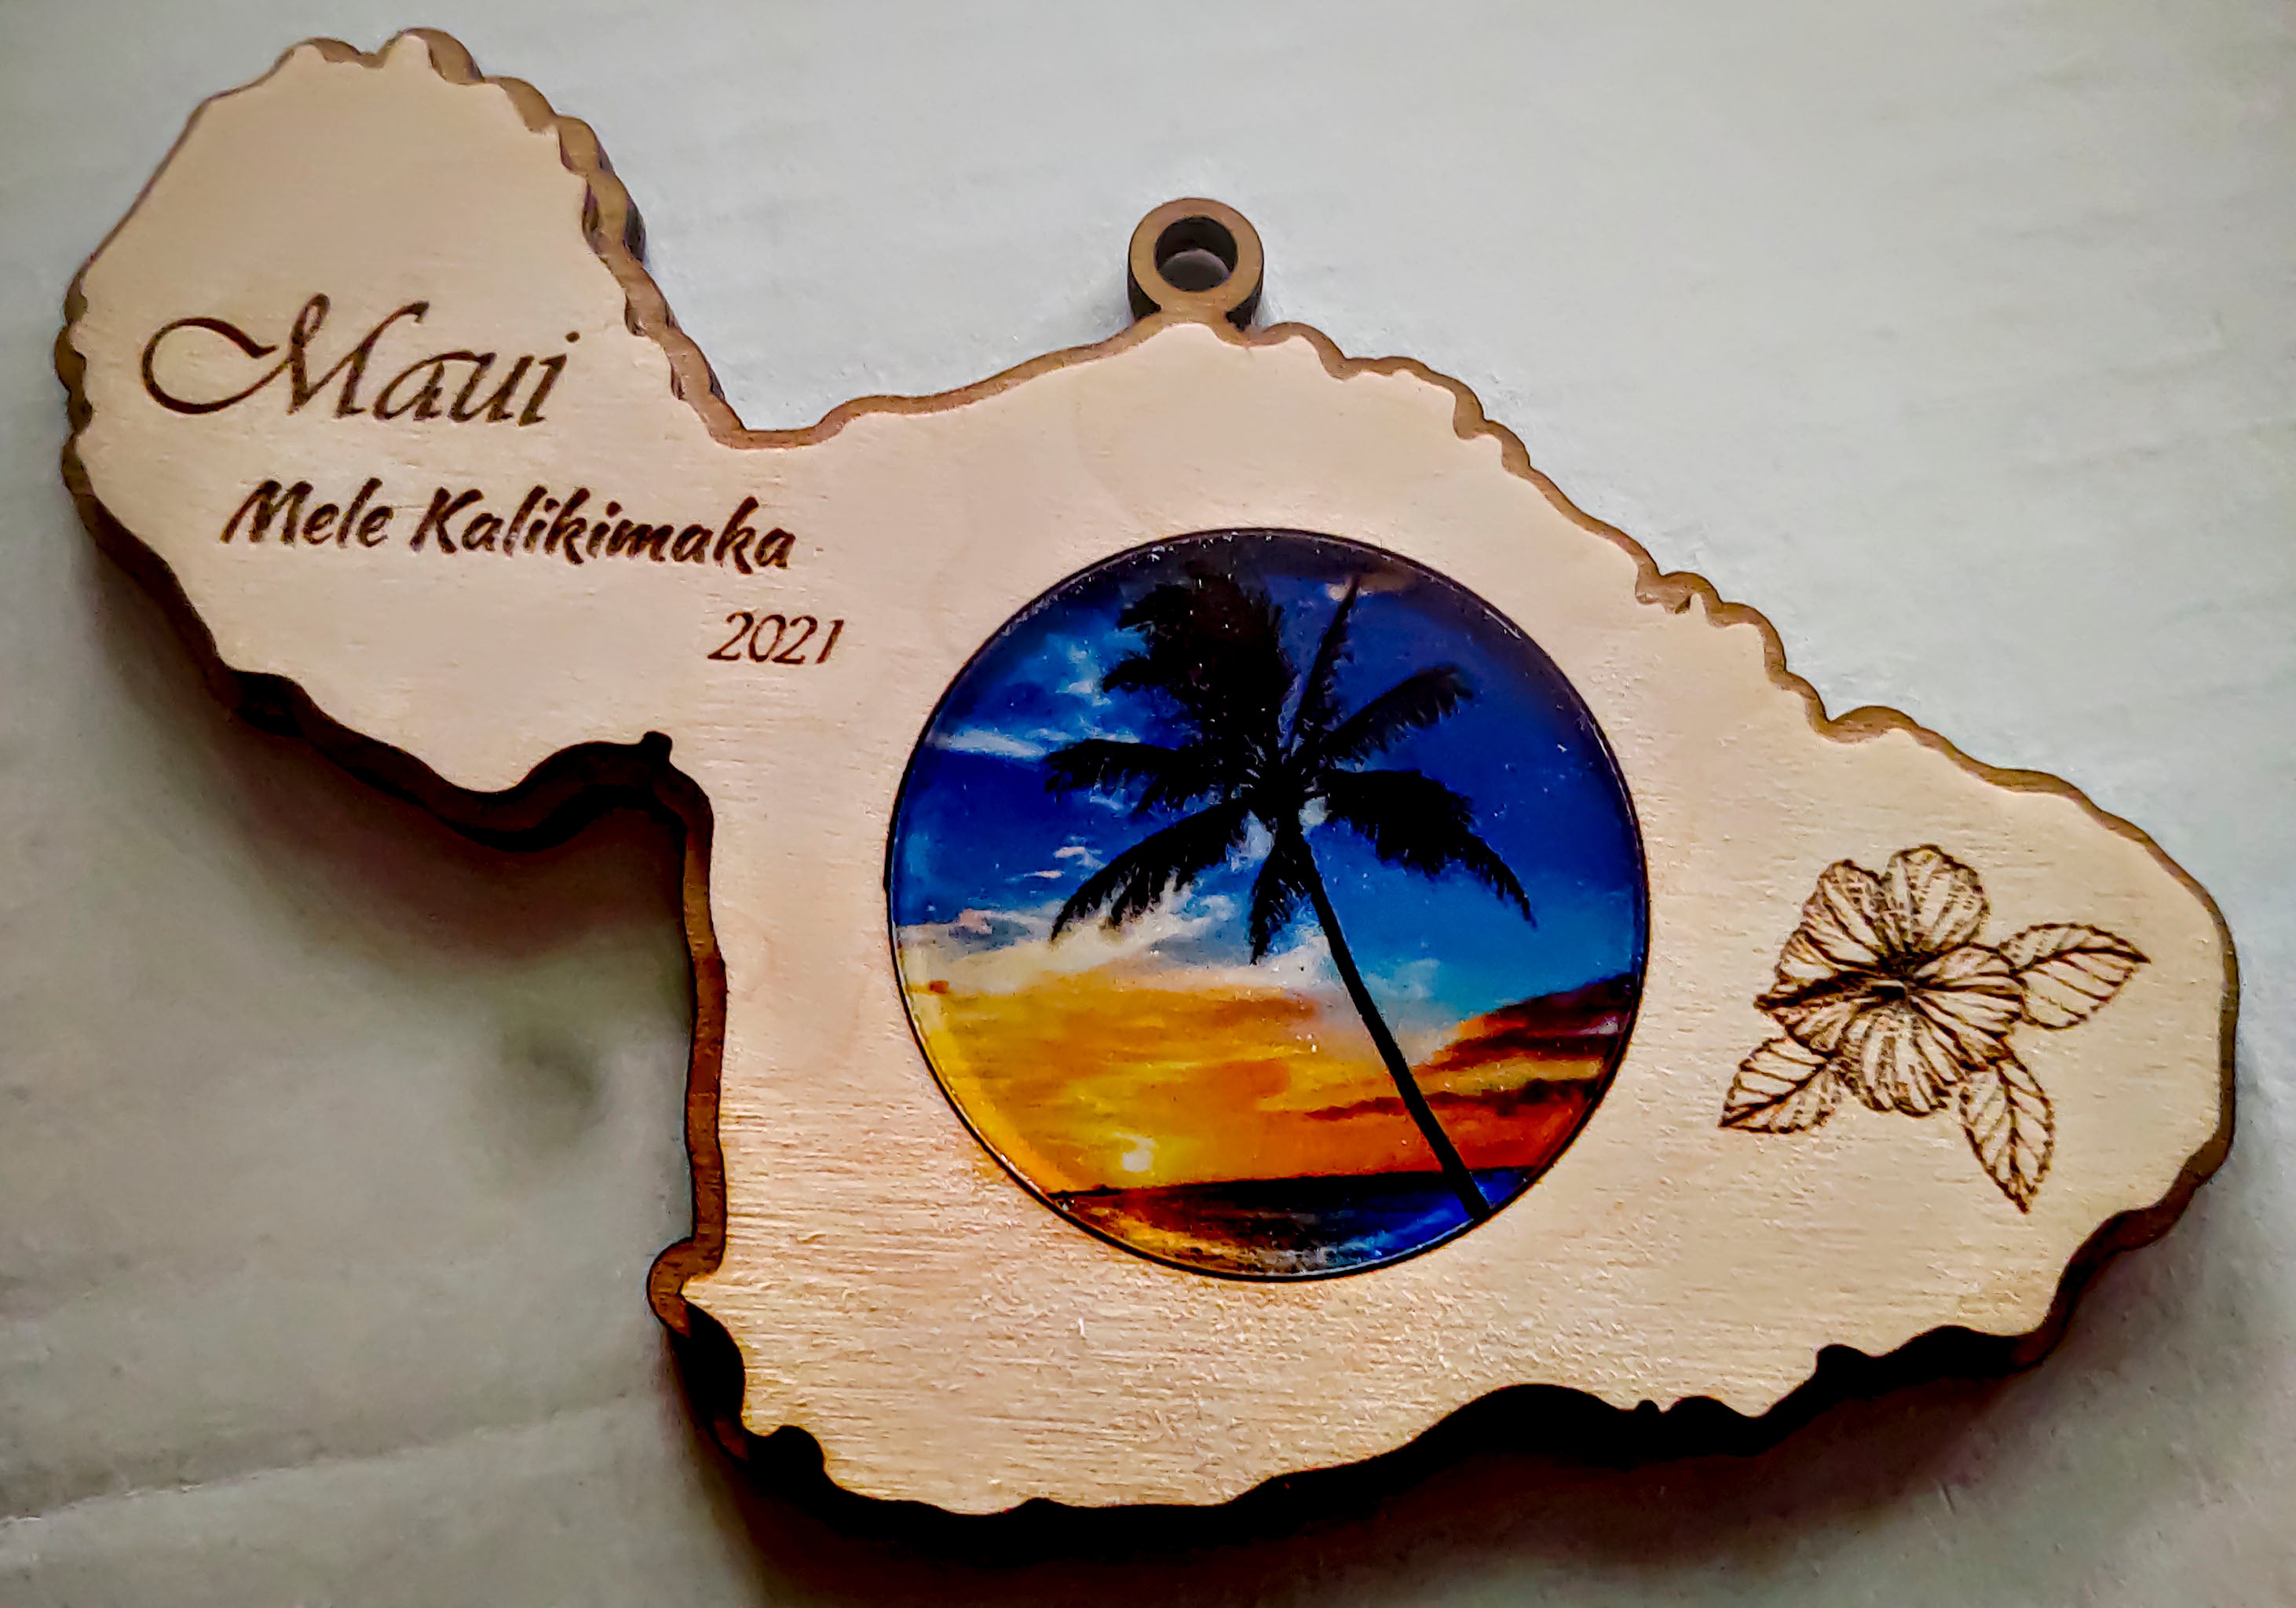 maui island ornament last sunset